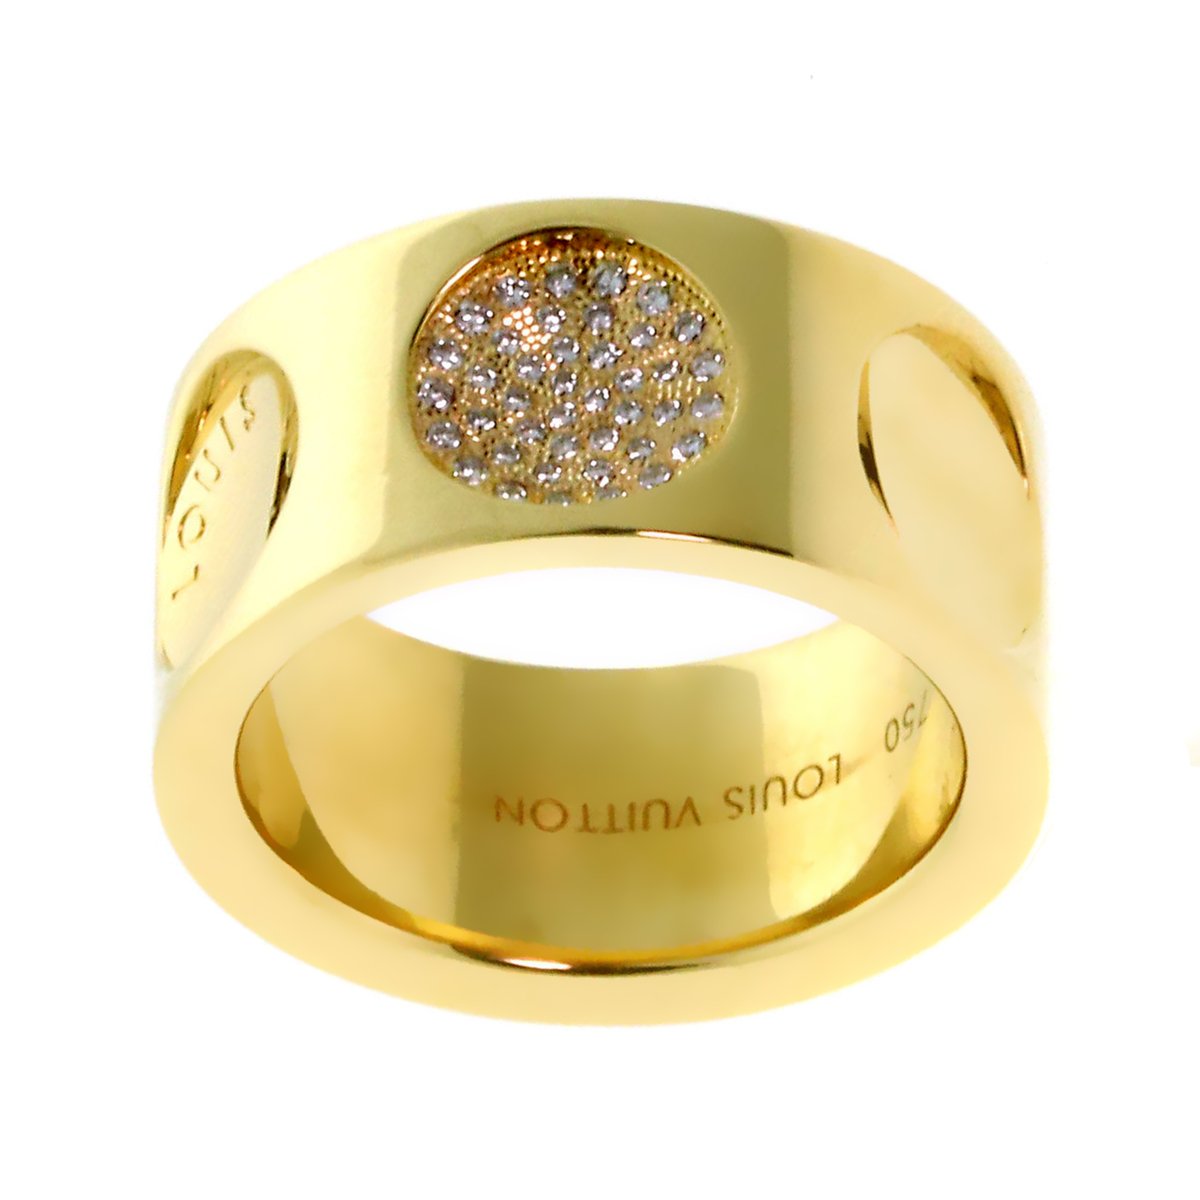 Authentic LOUIS VUITTON Empreinte Ring #260-005-955-9566